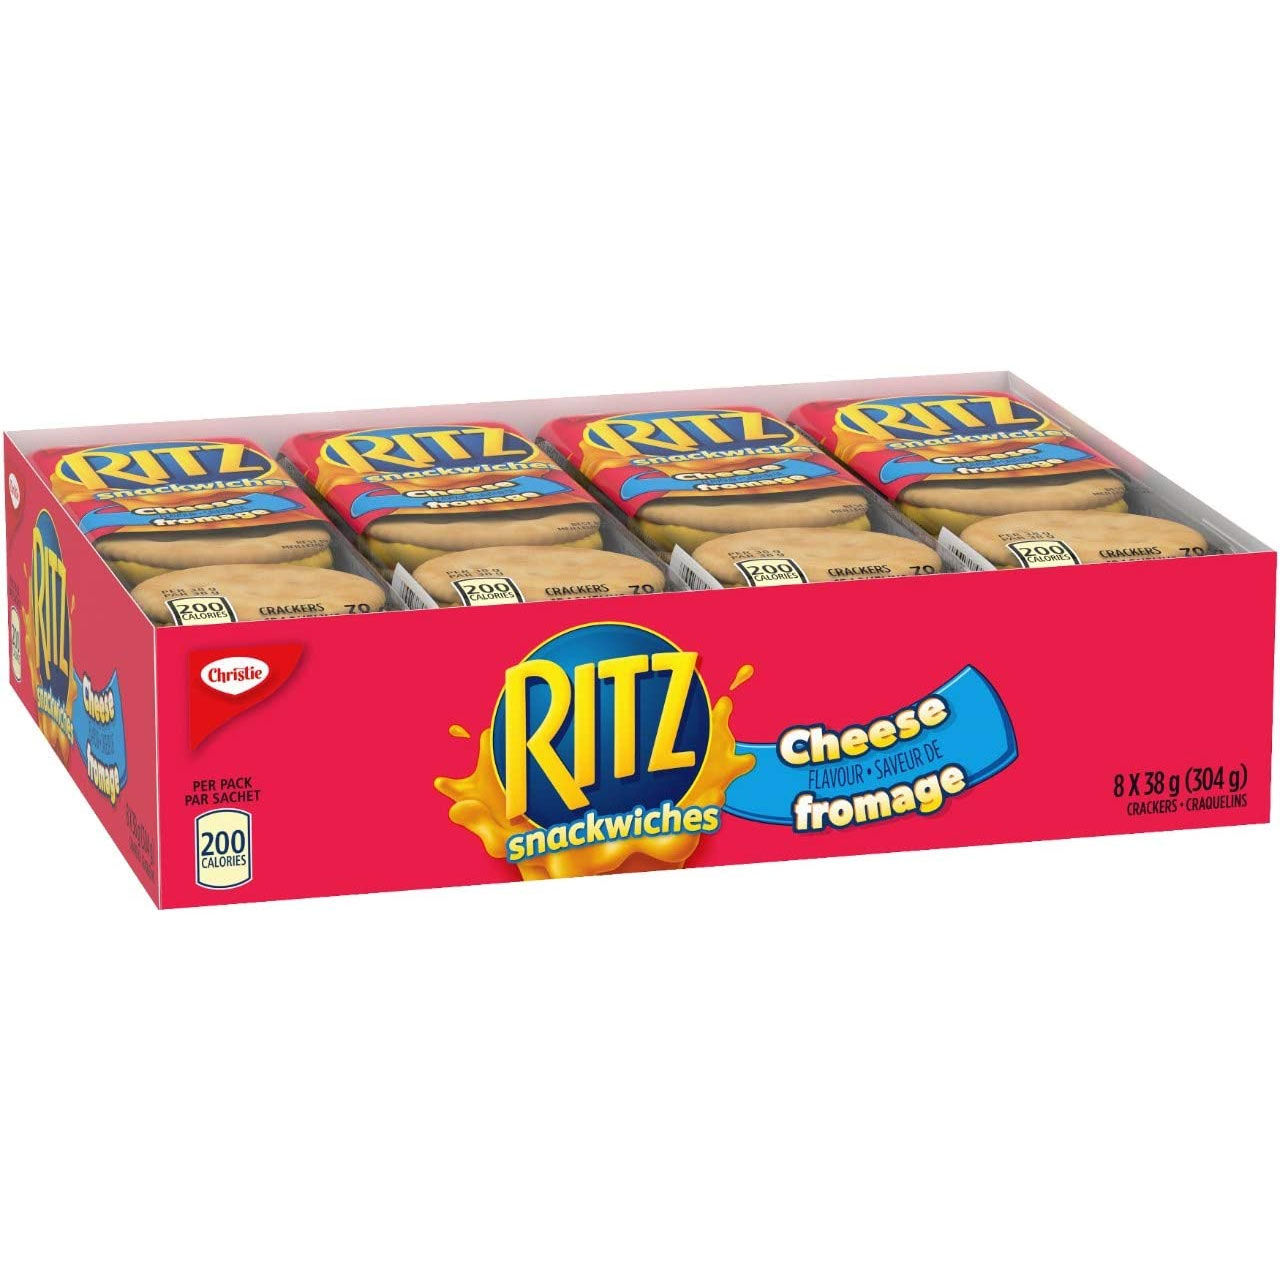 Amazon：Ritz Crackers Cheese Sandwich (8 Packs)只卖$2.49